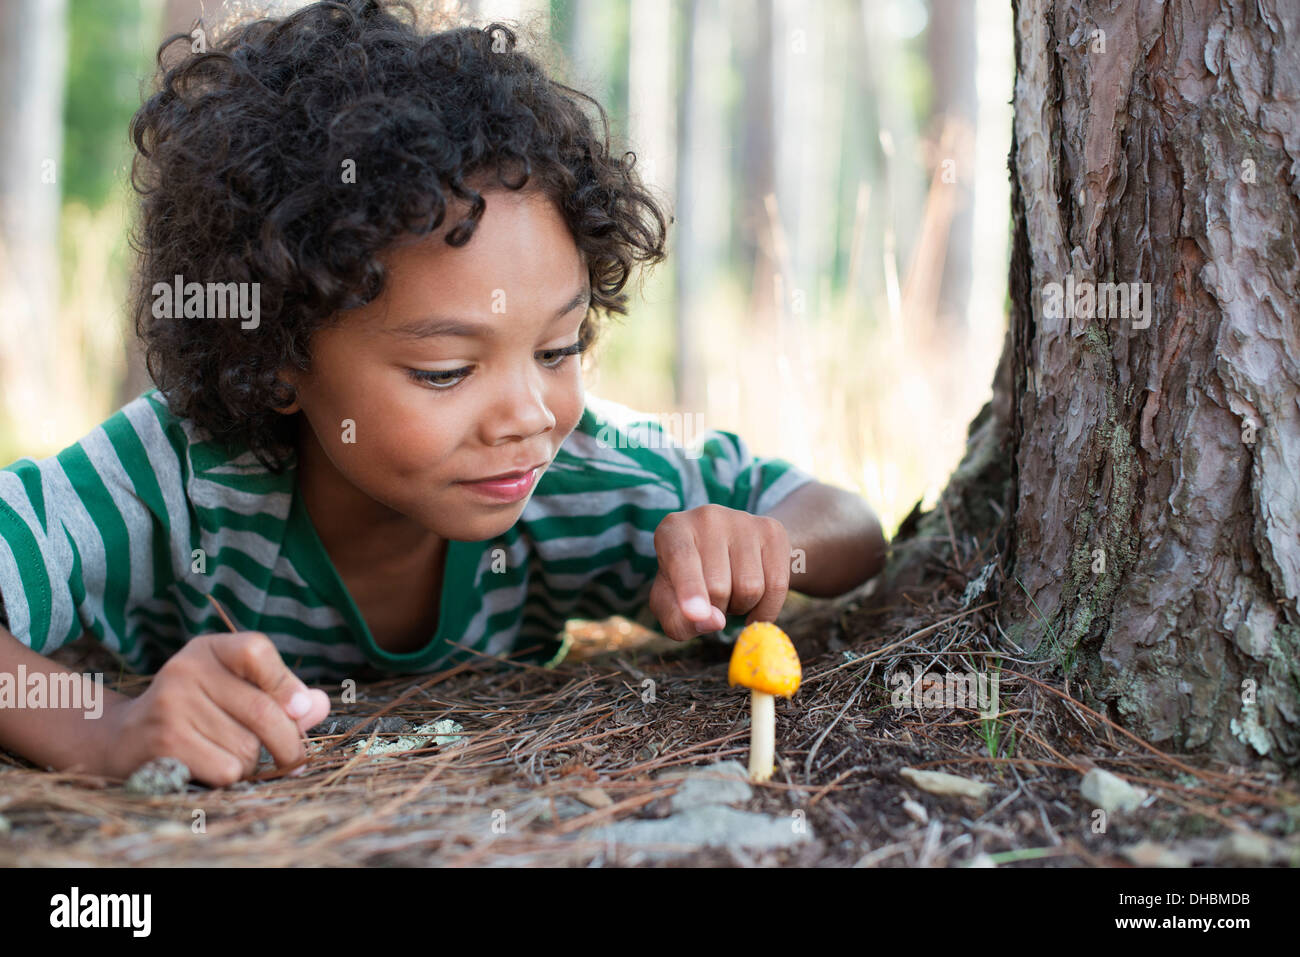 Bäume am Ufer eines Sees. Ein Kind, einen kleine gelbe Pilze Pilz Inspektion hinlegen. Stockfoto